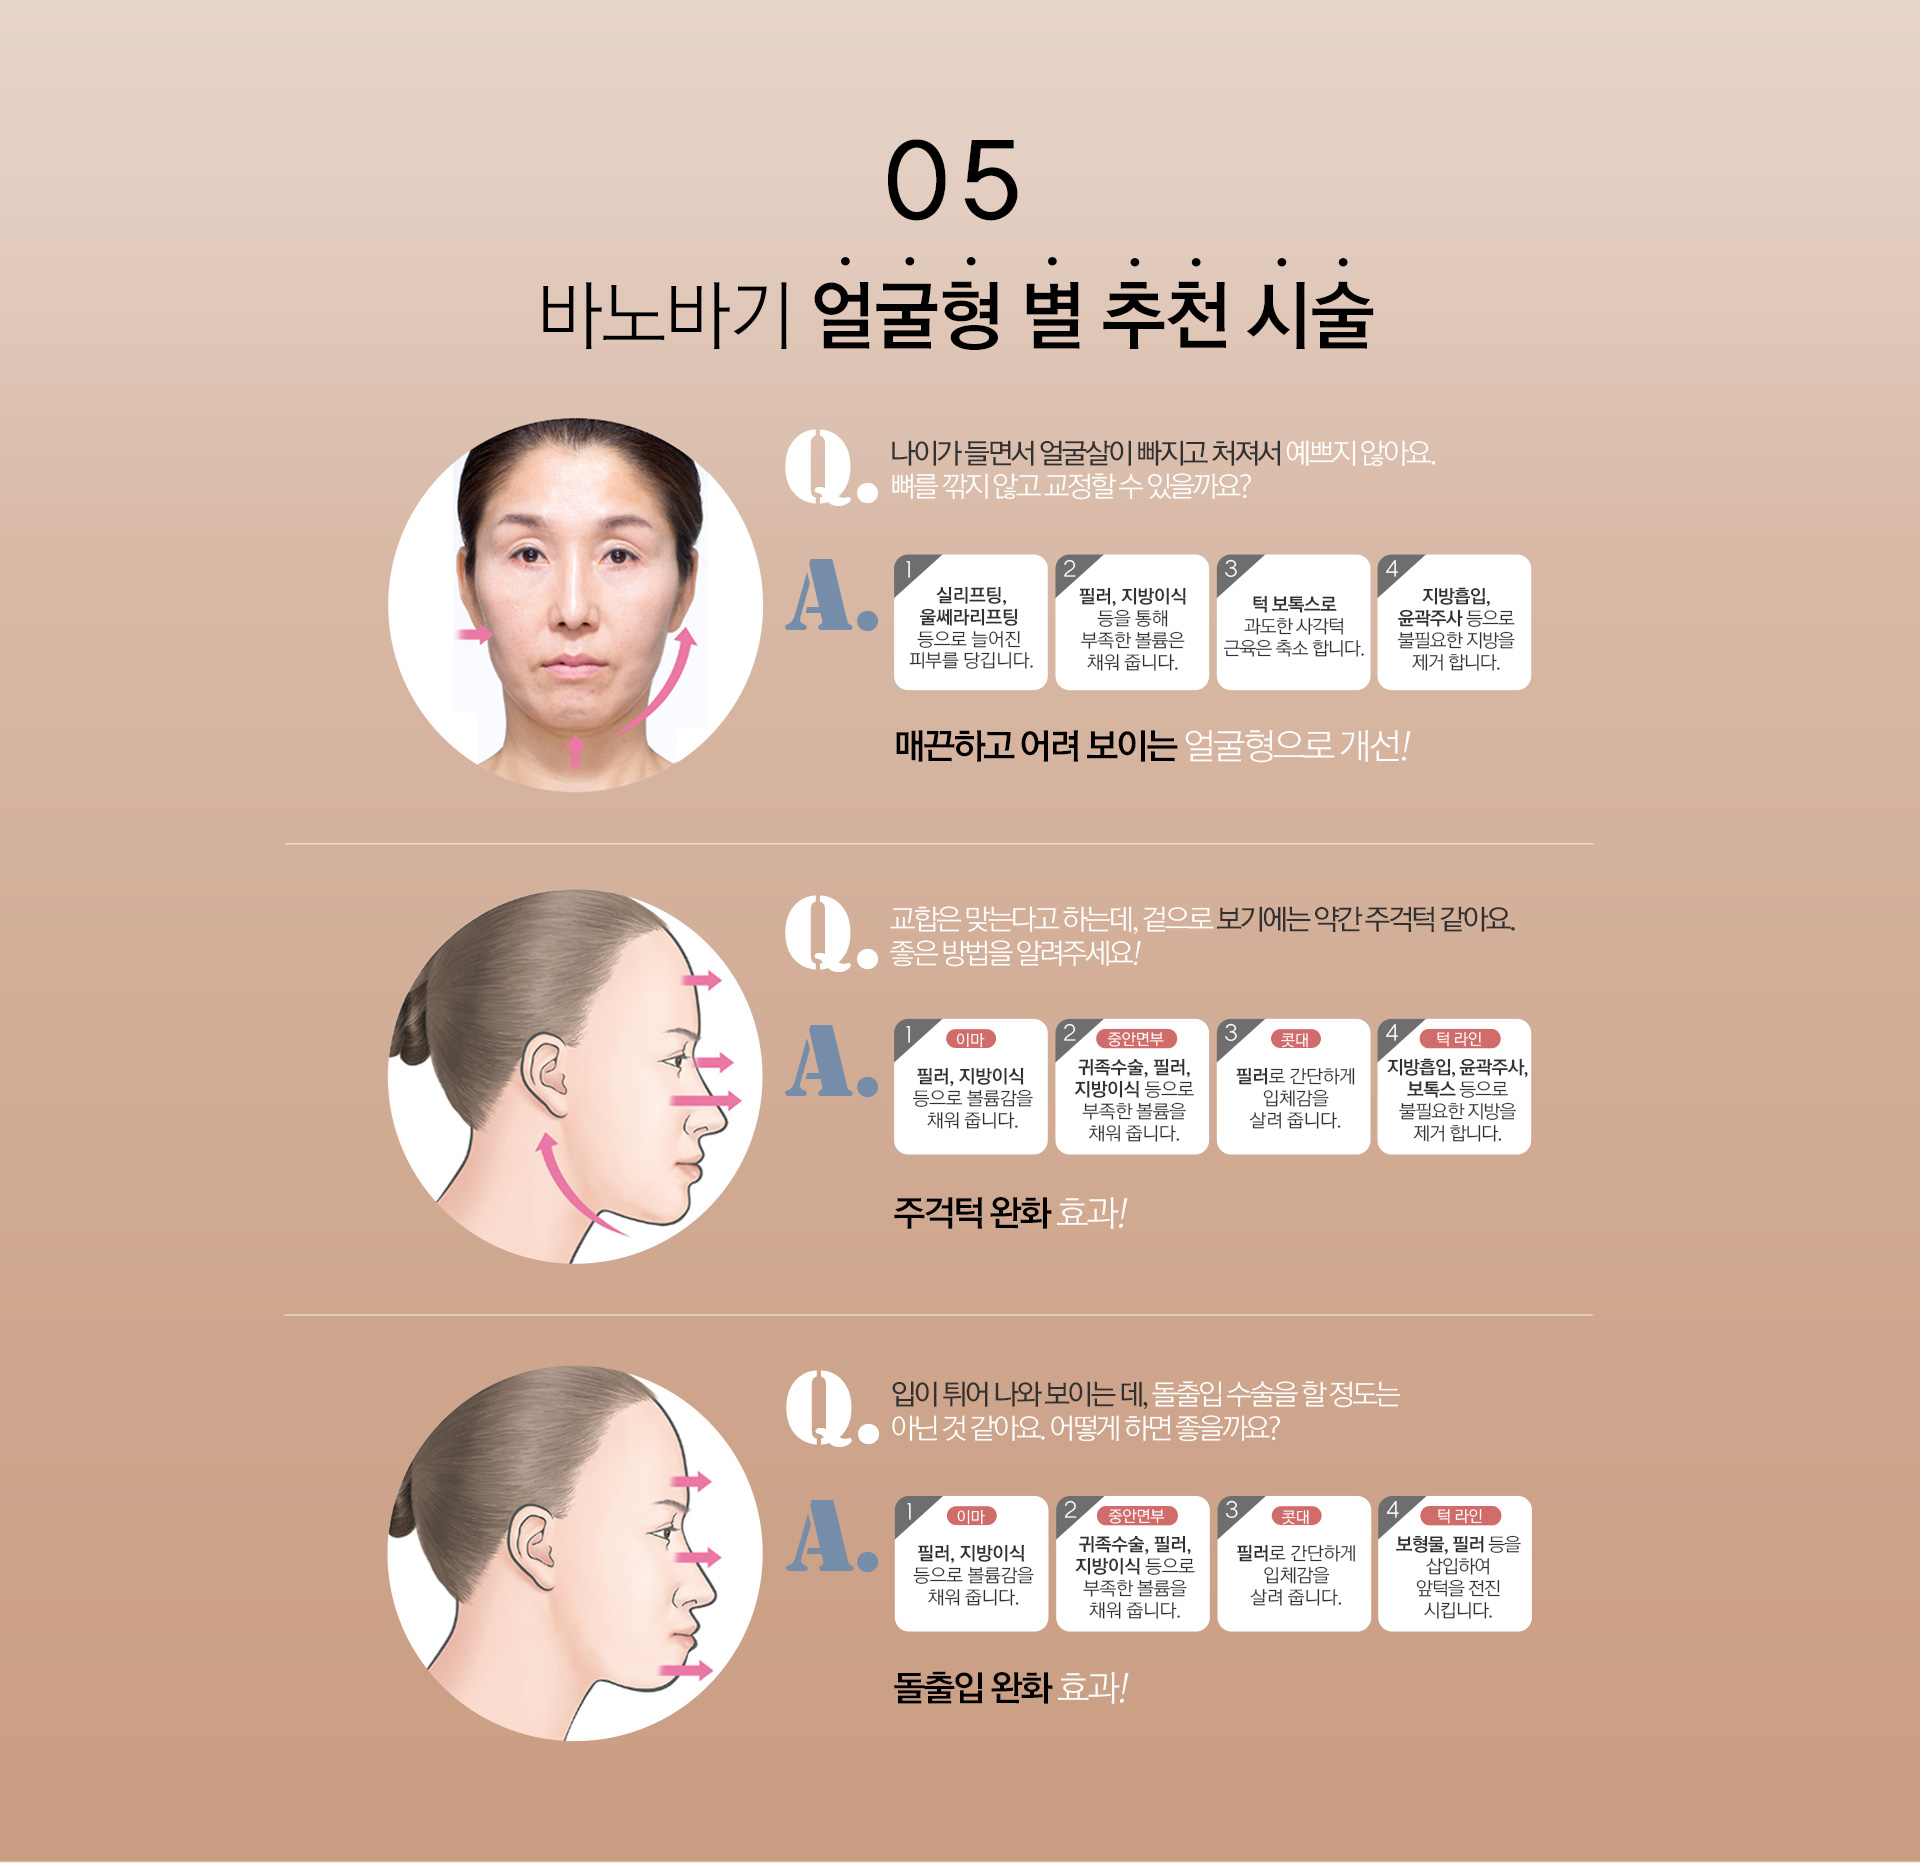 05 - 바노바기 얼굴형 별 추천 시술